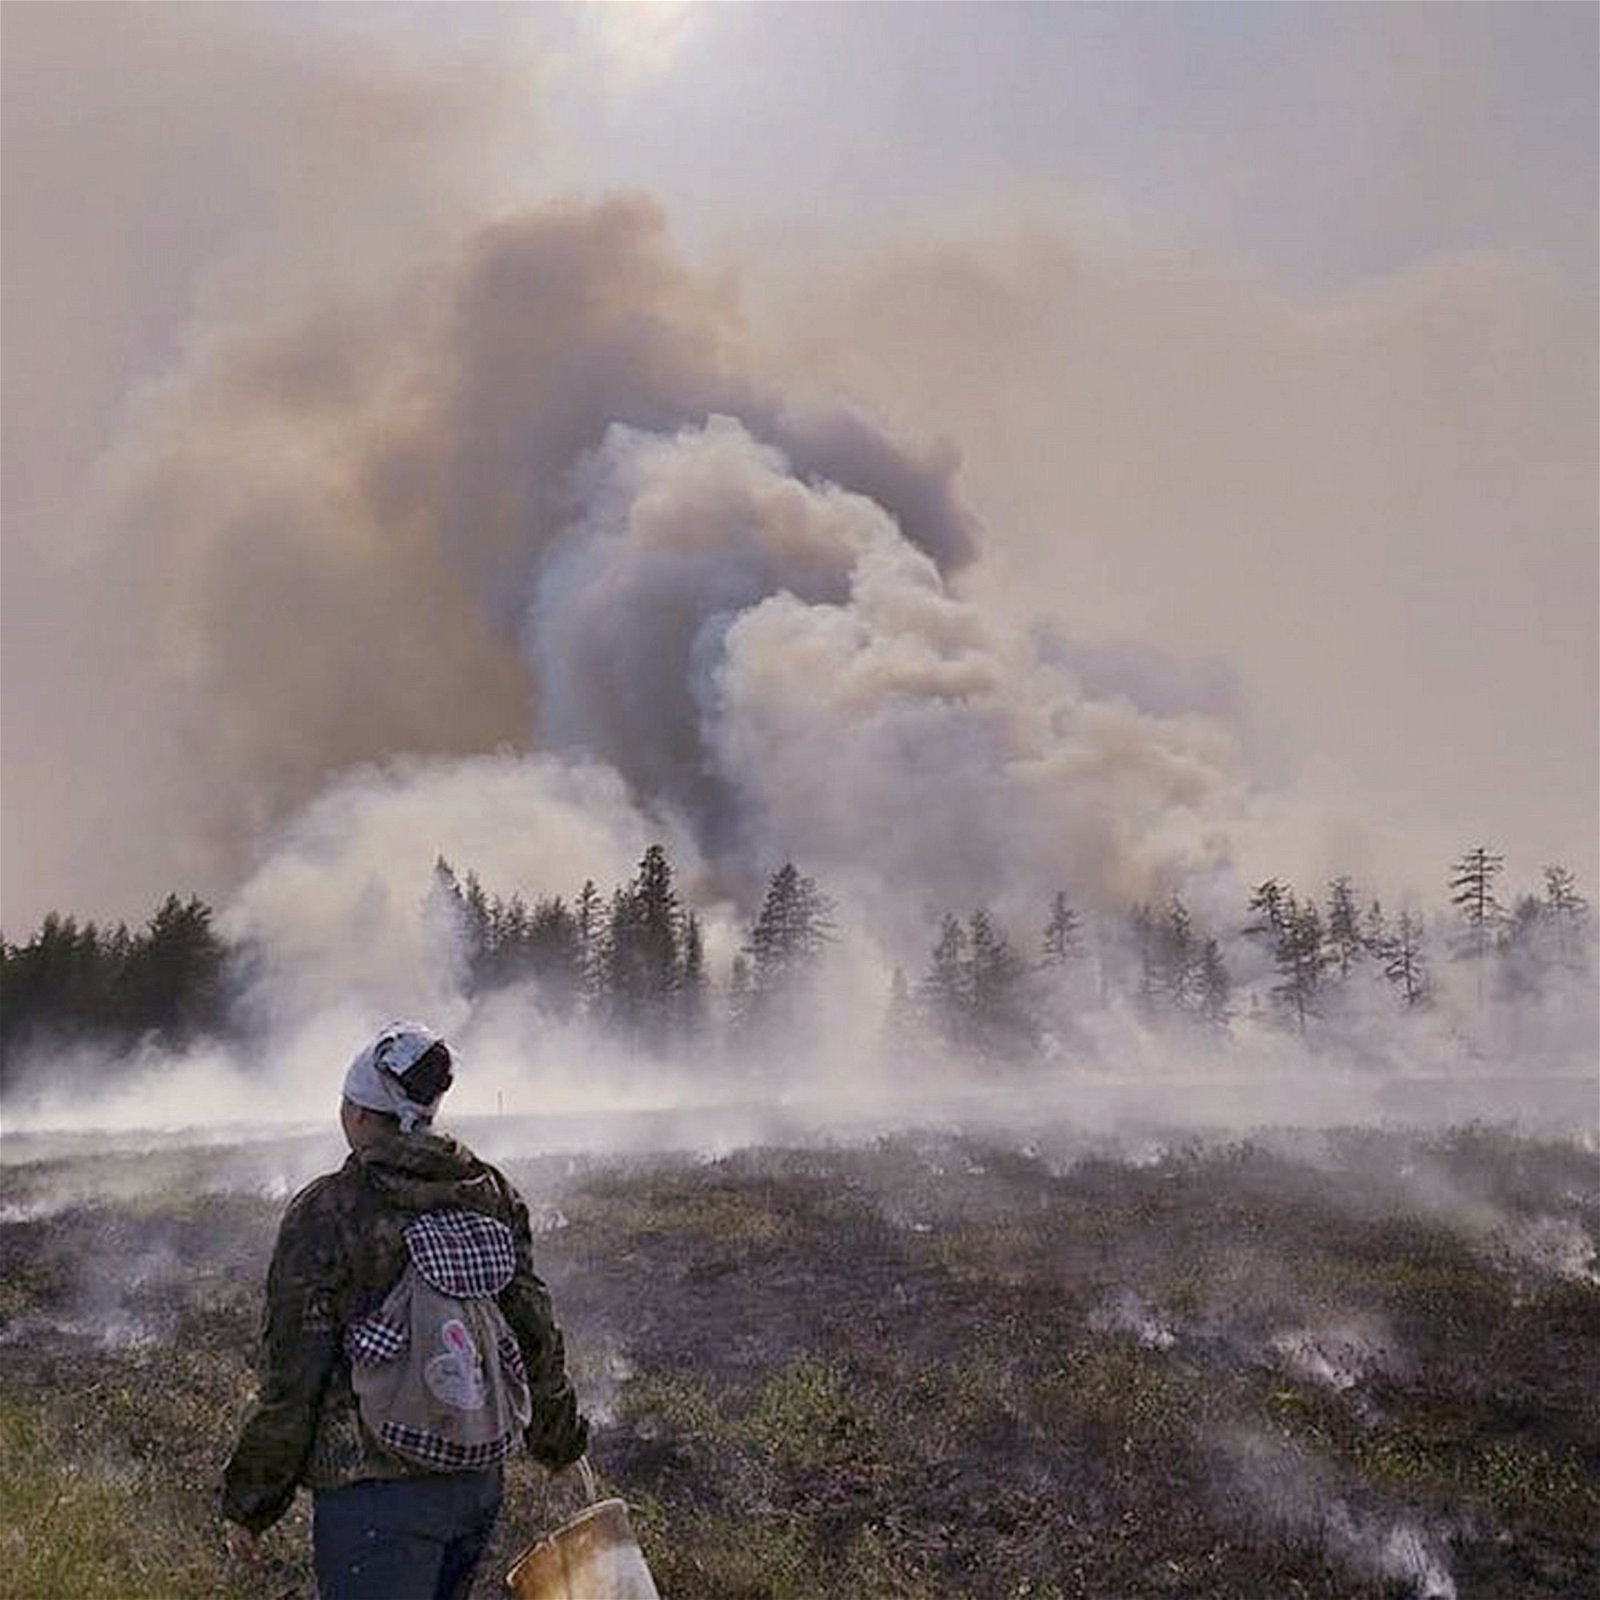 丹麦自治区格陵兰、俄罗斯西伯利亚和美国阿拉斯加州日前发生的野火，产生滚滚烟雾，连太空中都可看见。这是在西伯利亚，山火引起的浓烟笼罩著整个地区。